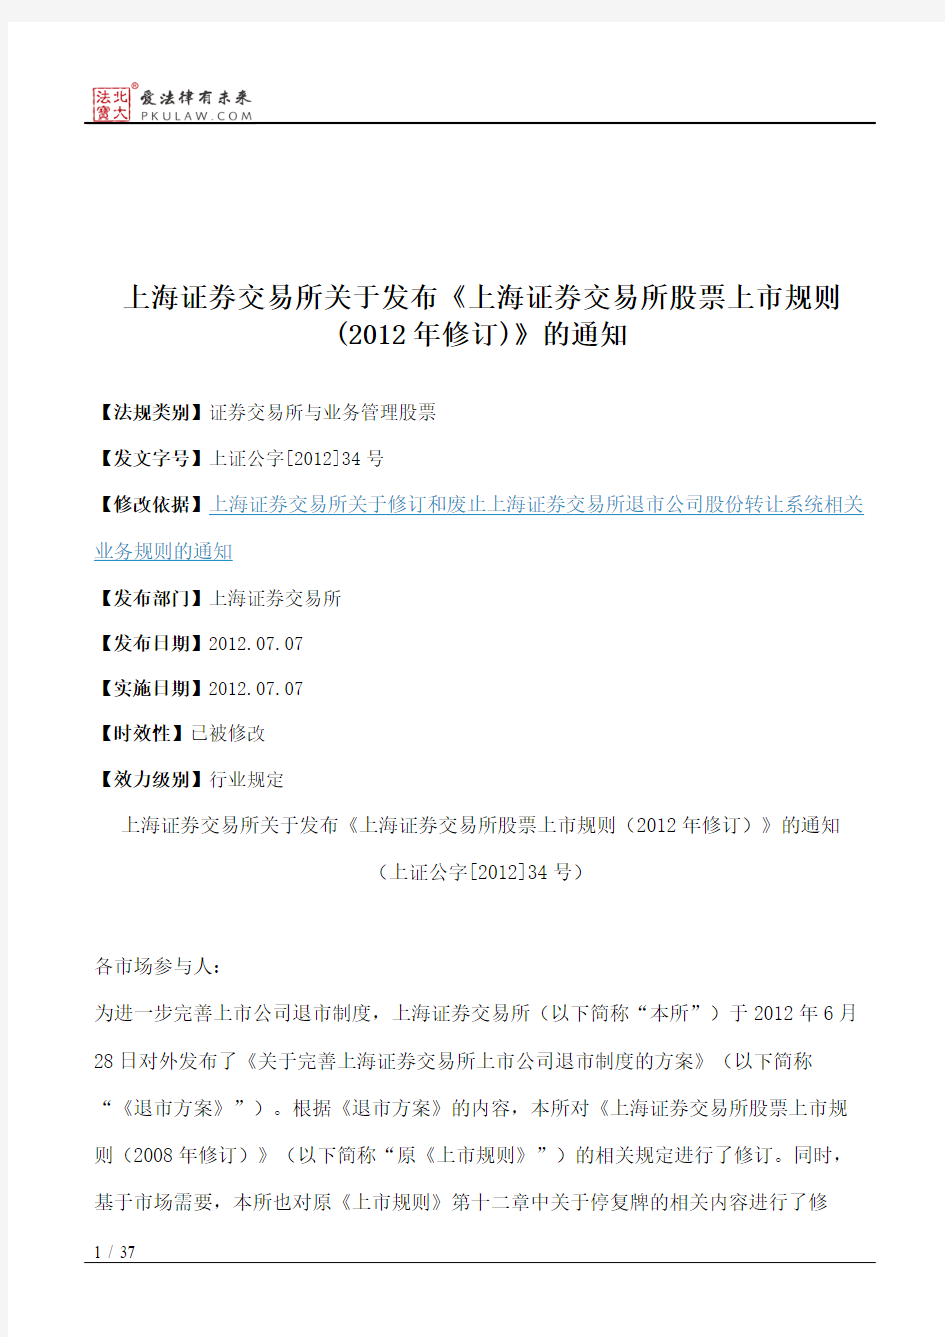 上海证券交易所关于发布《上海证券交易所股票上市规则(2012年修订)